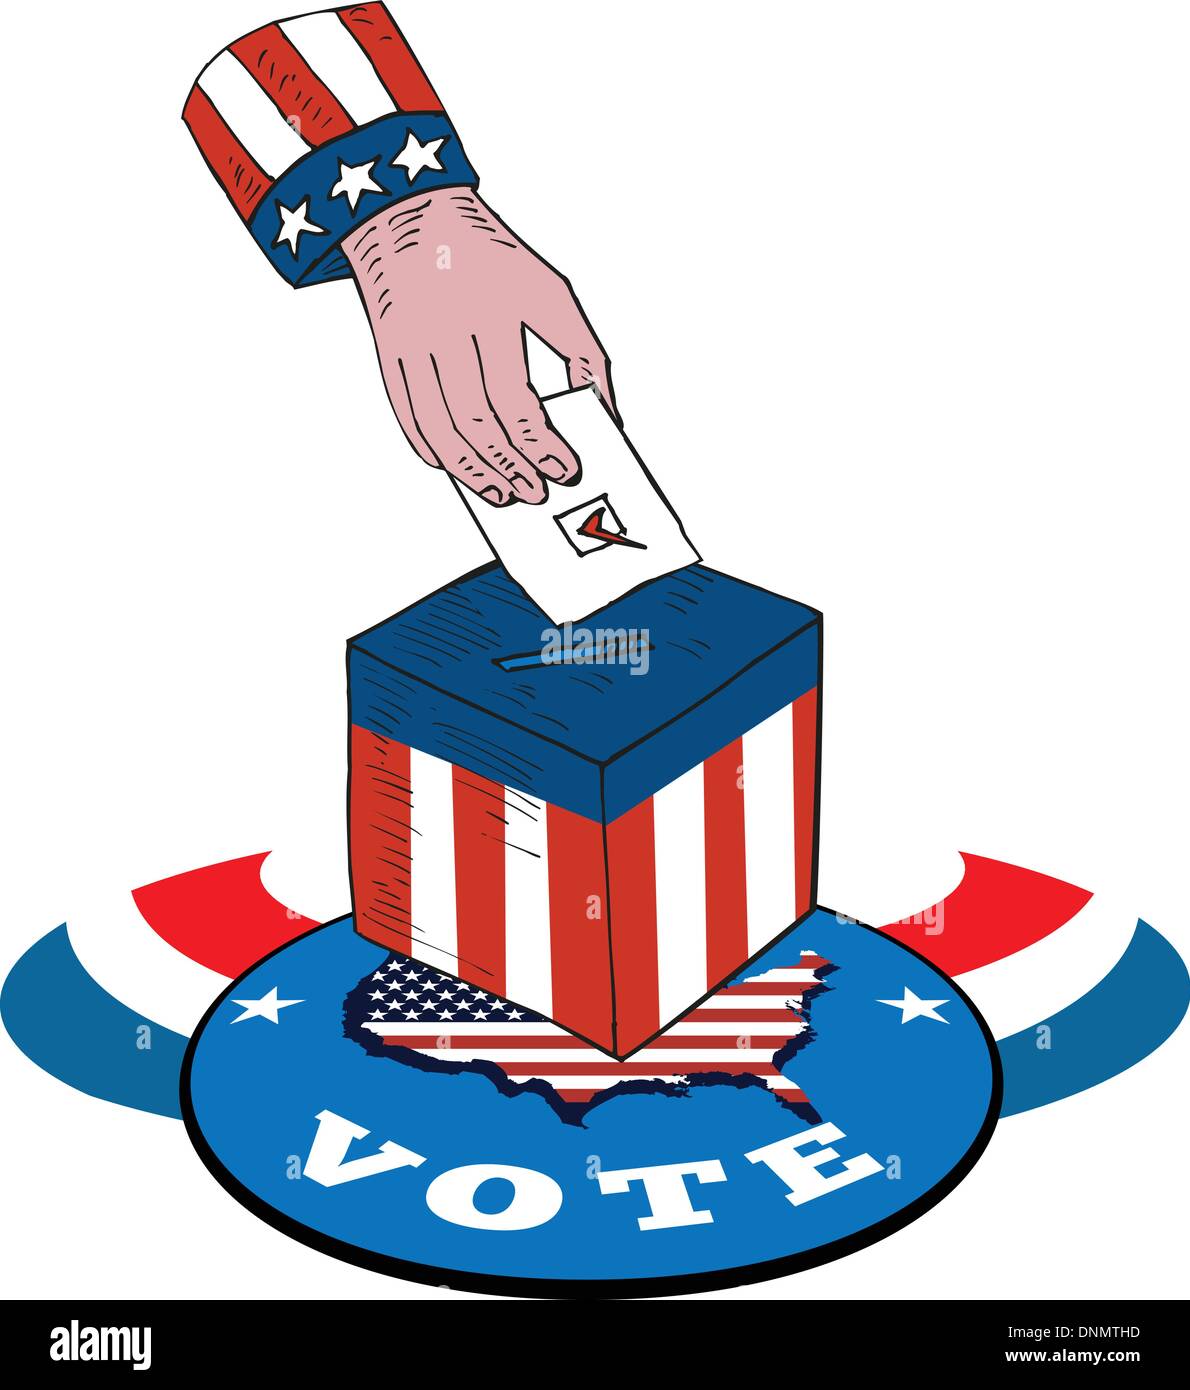 Illustration von einer Hand setzen Stimmzettel Votign in Box mit amerikanischen stars und Stripes Flagge und Karte und Wort stimmen. Stock Vektor